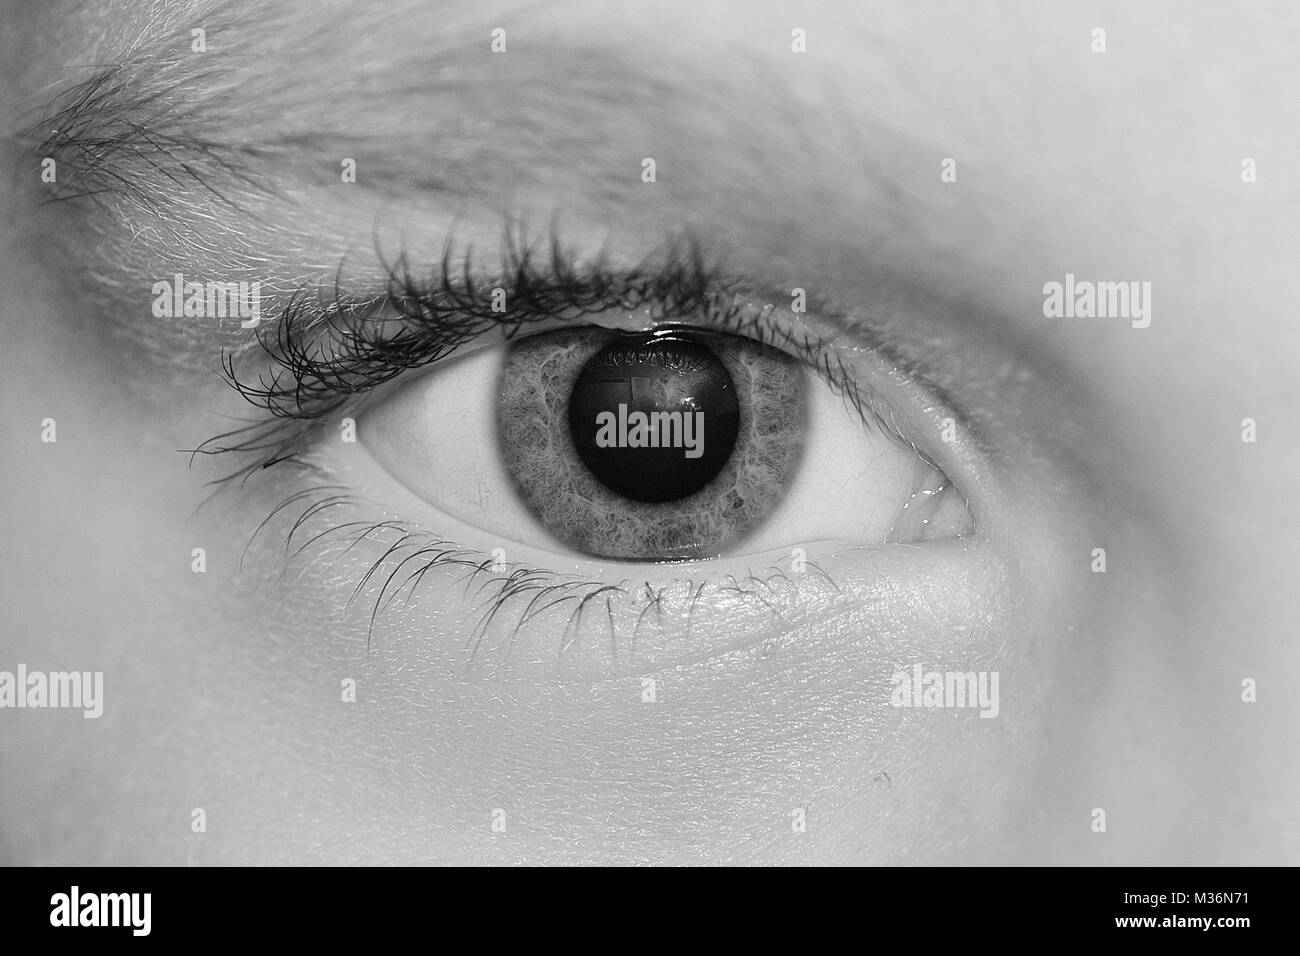 Wimpern, Iris und Augenbraue, detaillierte Auge, Wahrnehmung, Fokus Stockfoto